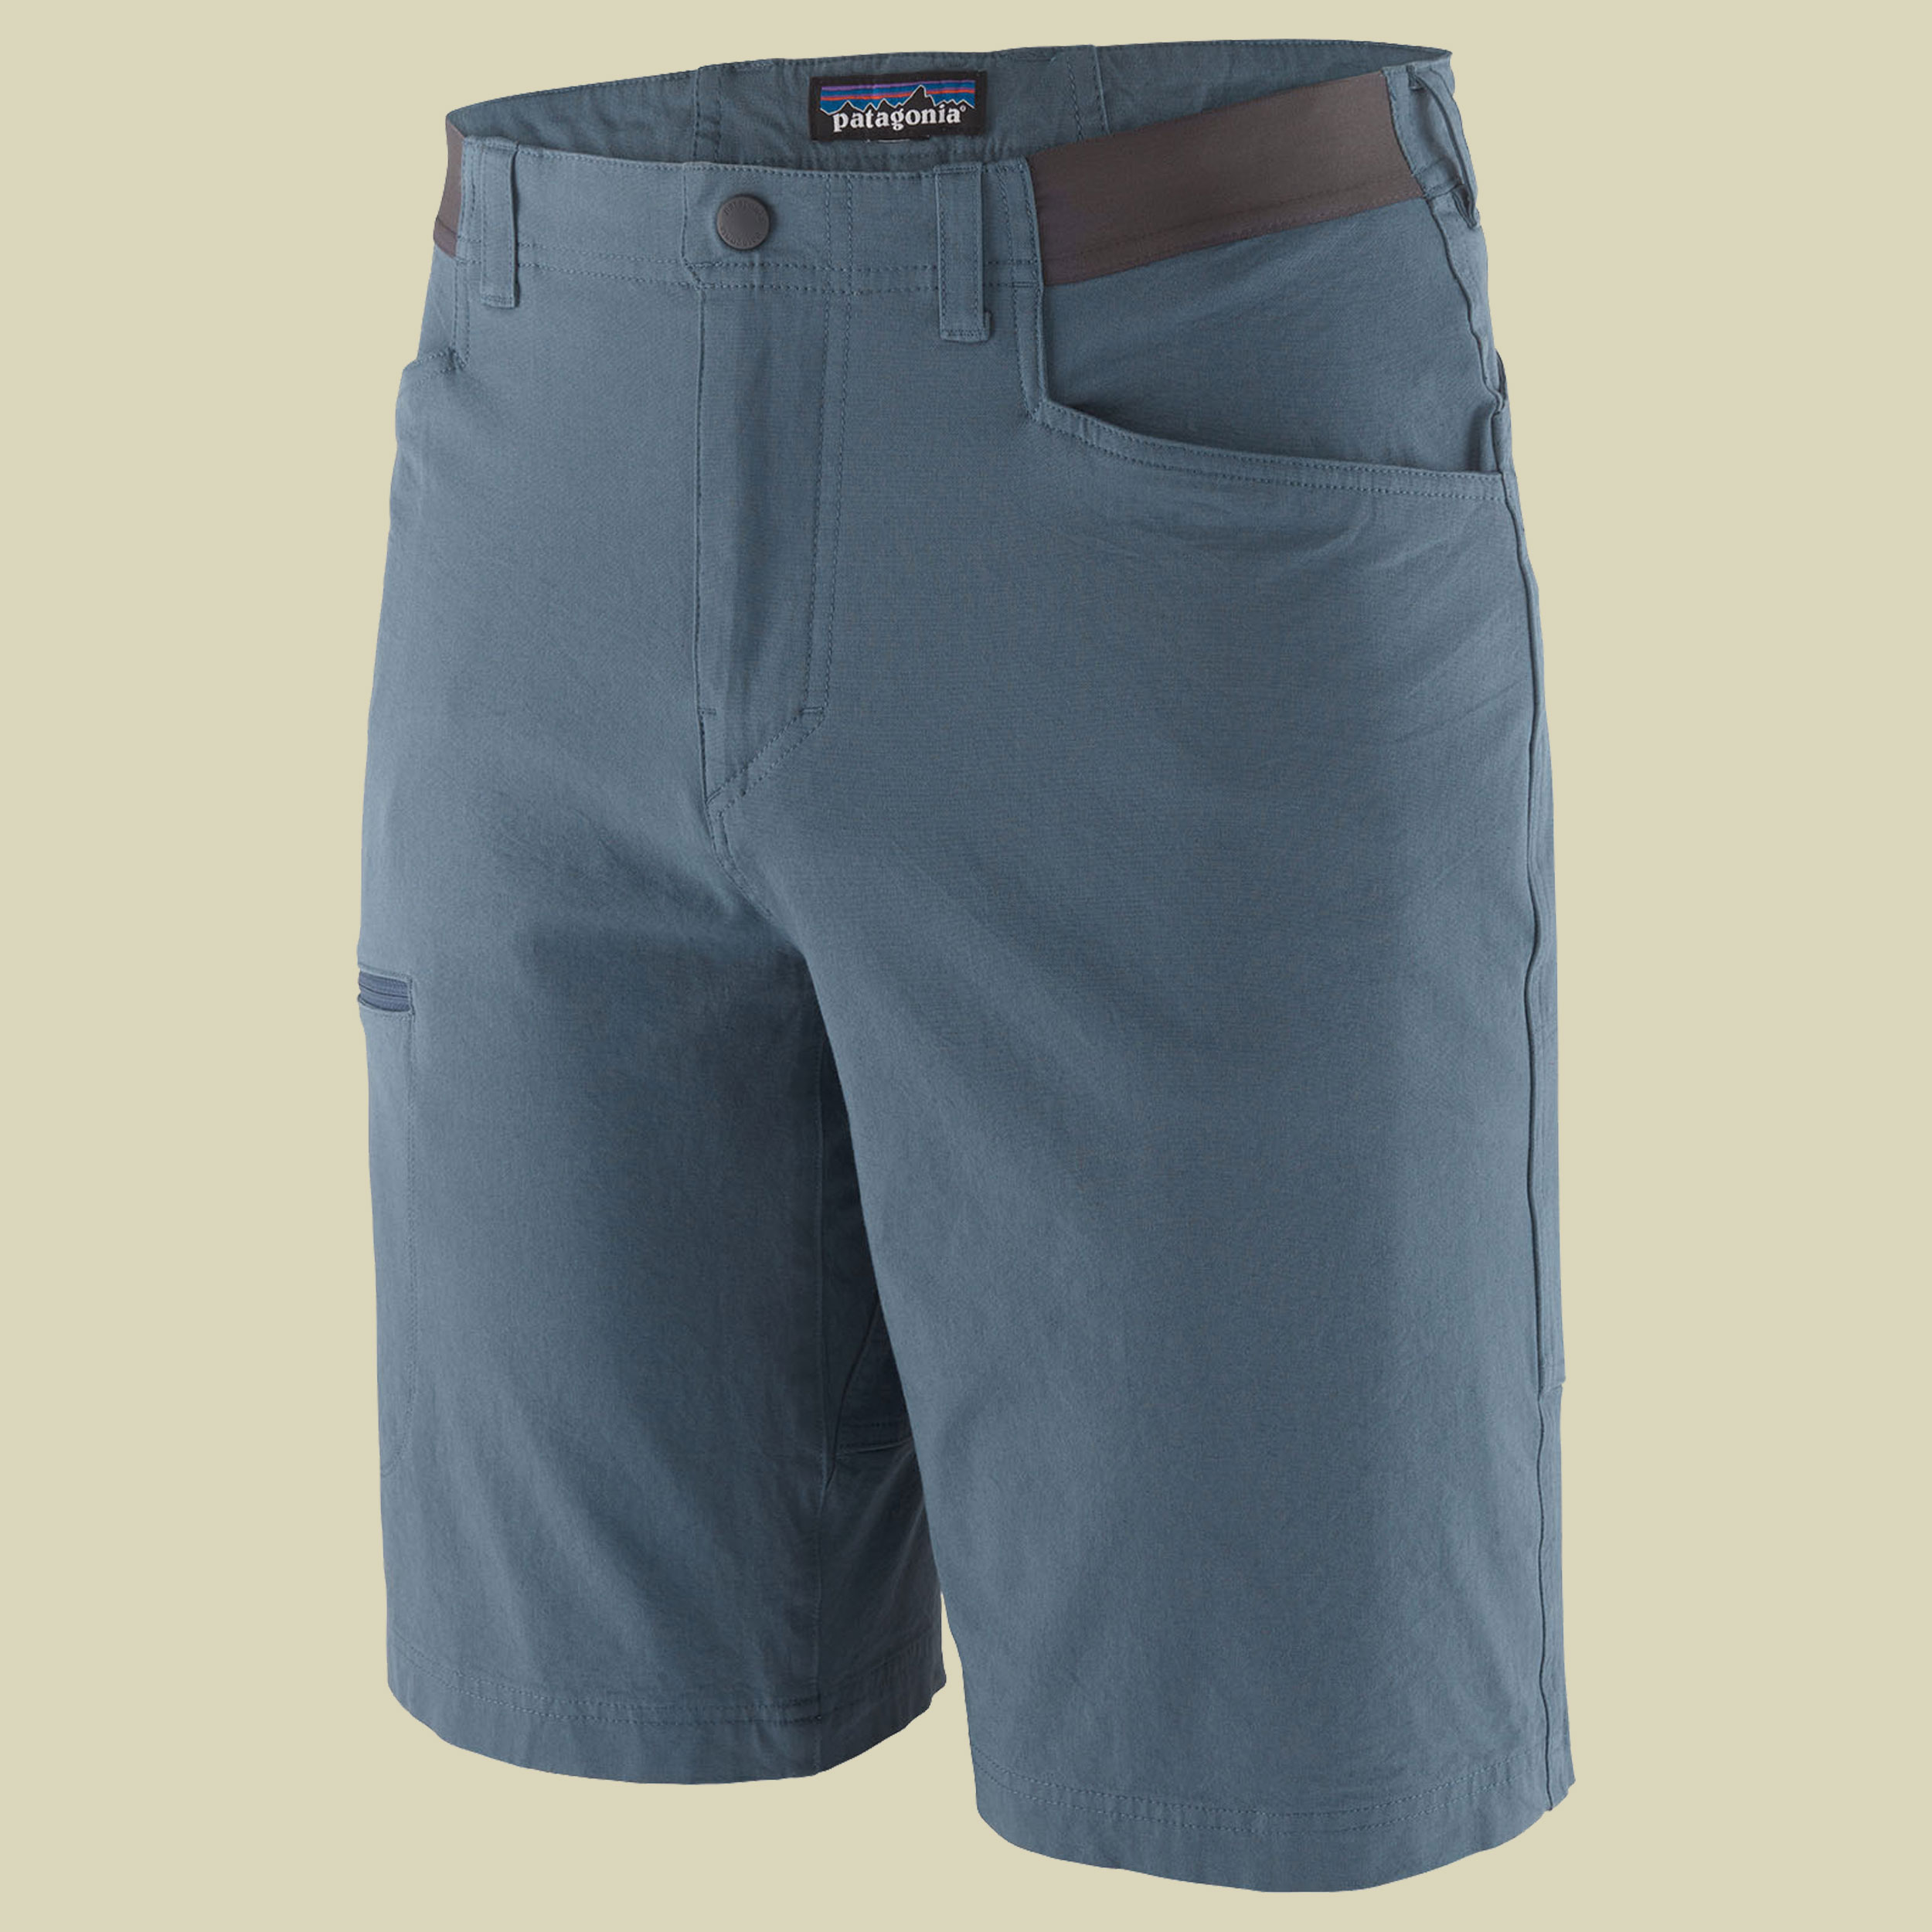 Venga Rock Shorts Men blau 34 - utility blue